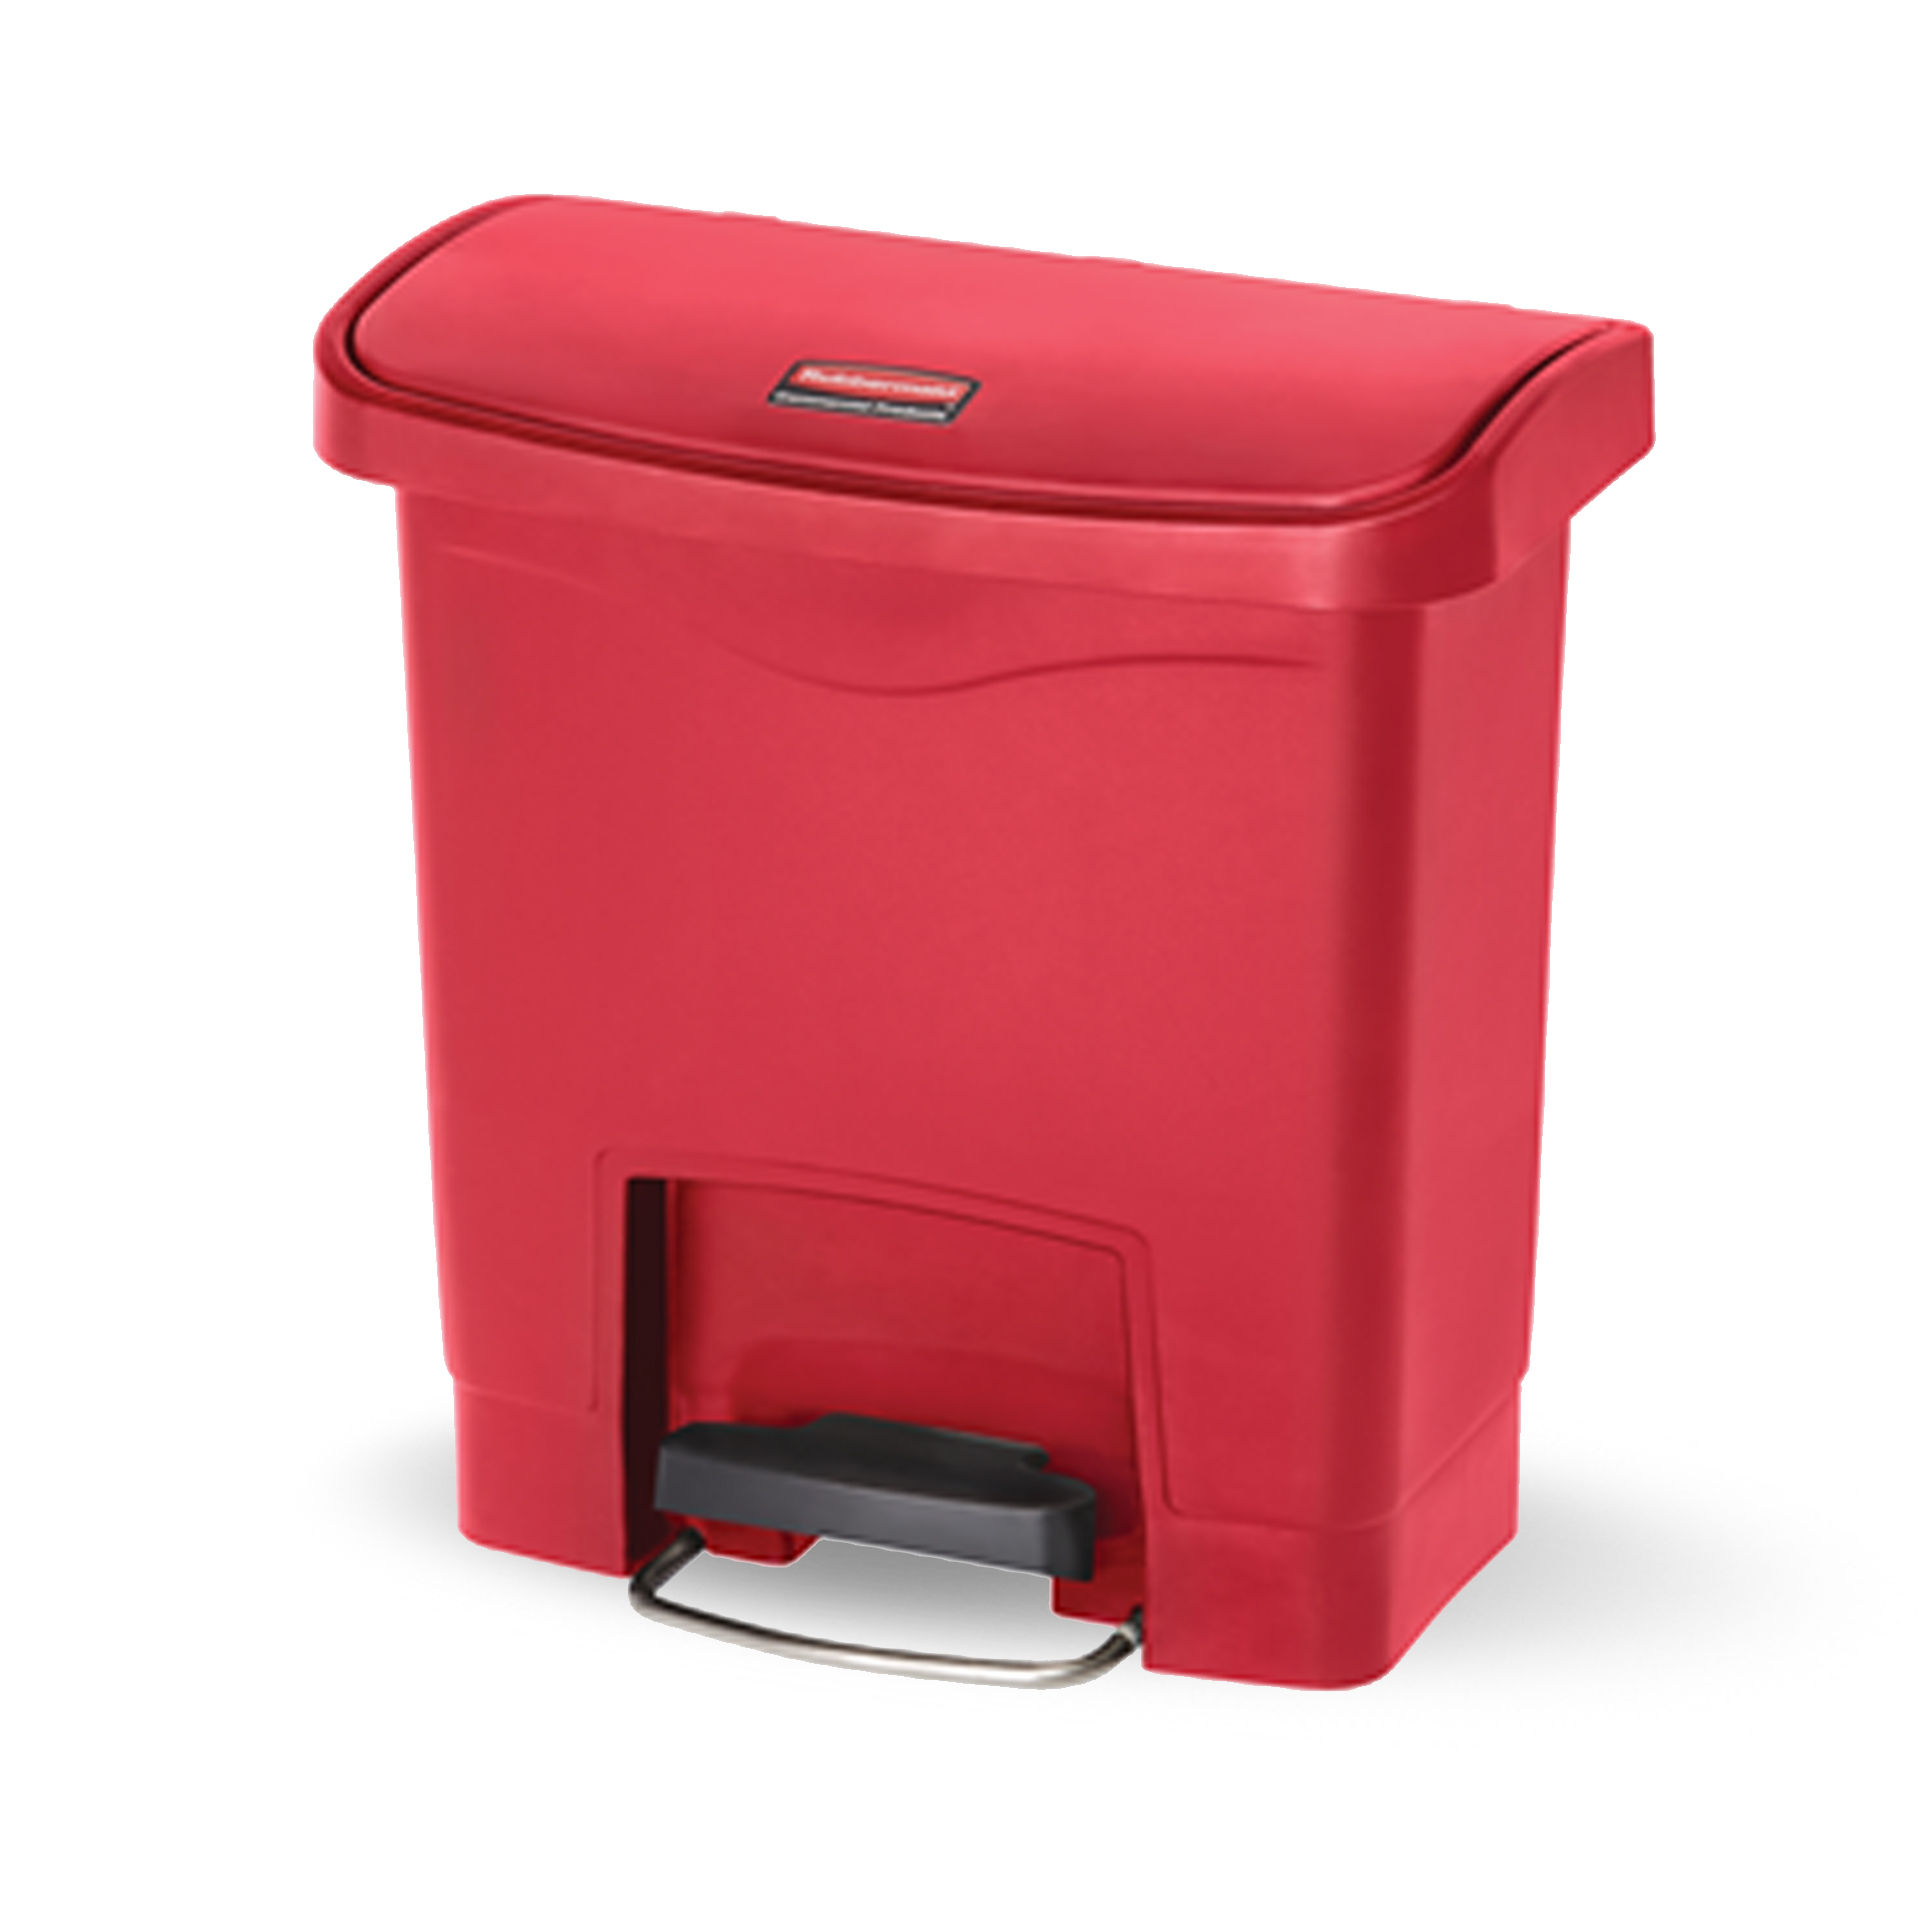 ถังขยะแบบเท้าเหยียบ Slim Jim® Step-On Container ขนาด 15 ลิตร สีแดง